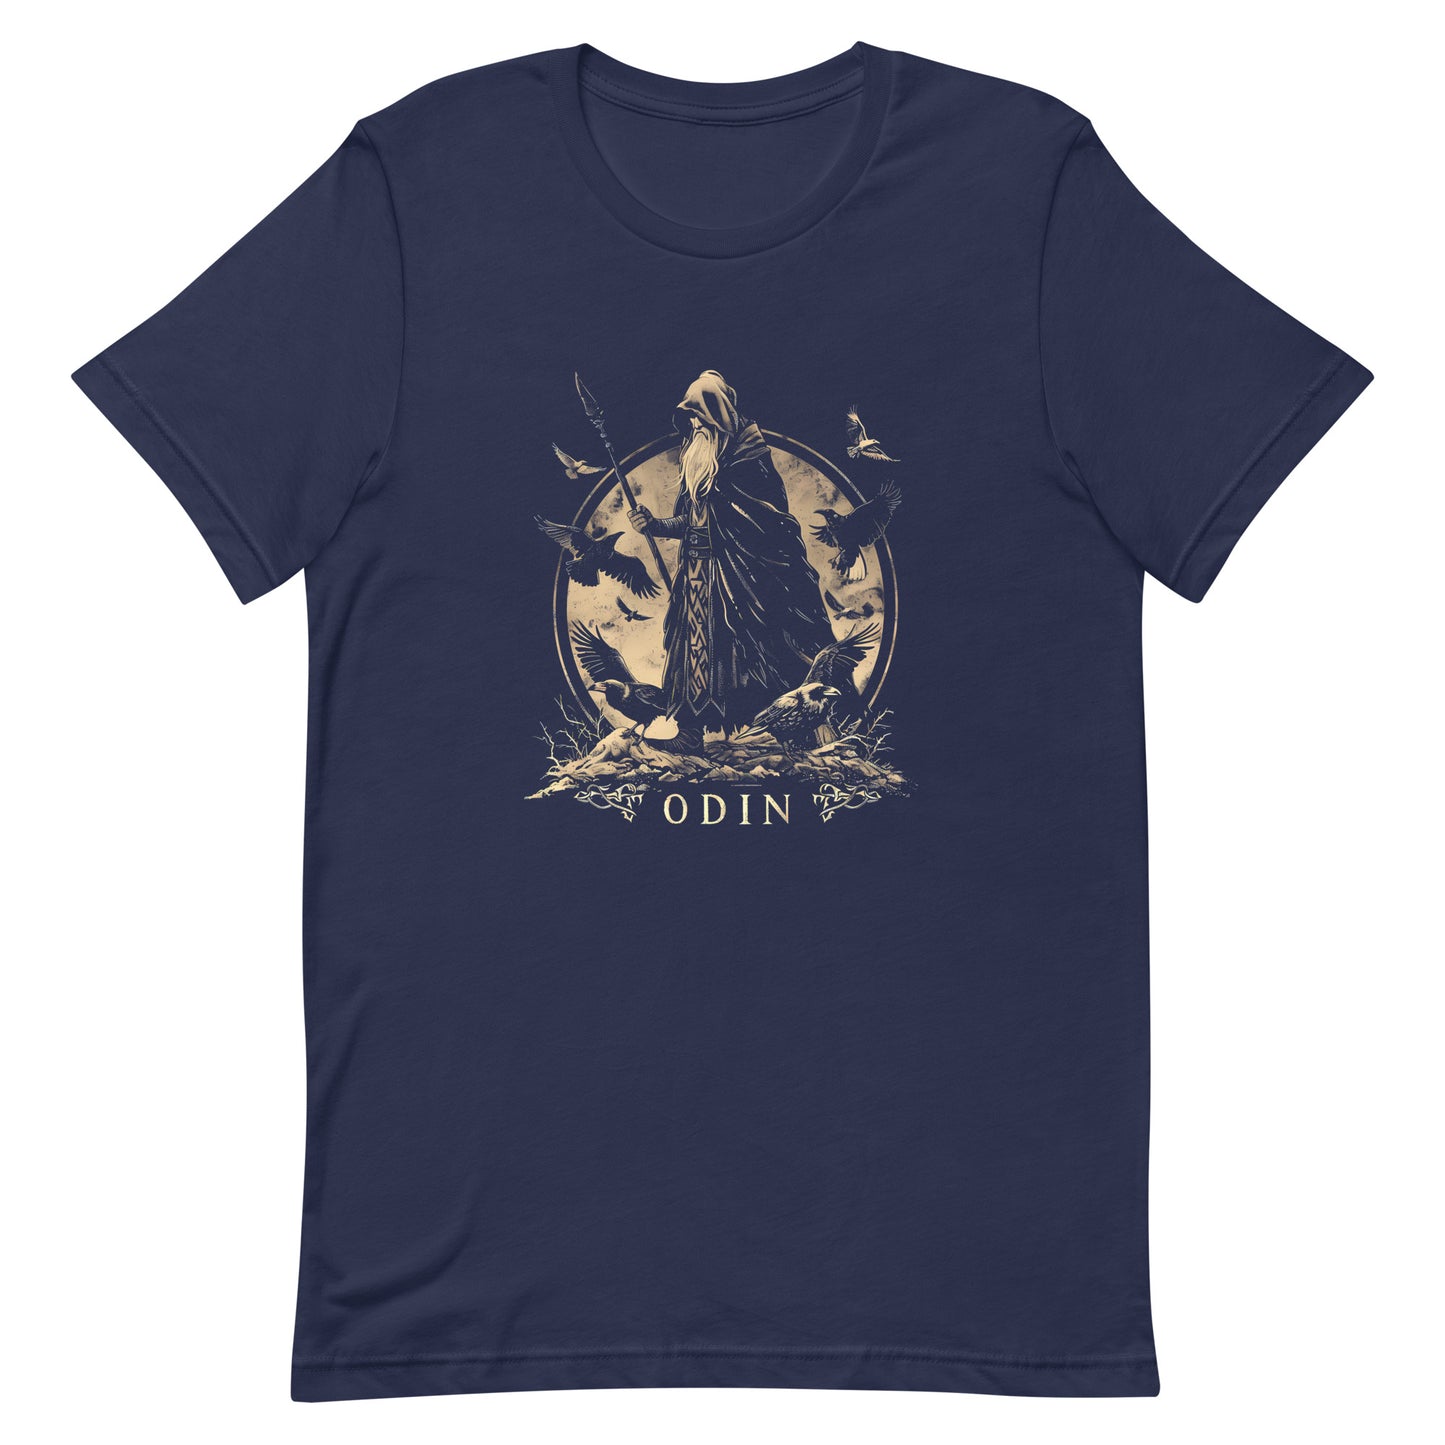 Odin Wanderer - Staple T-Shirt